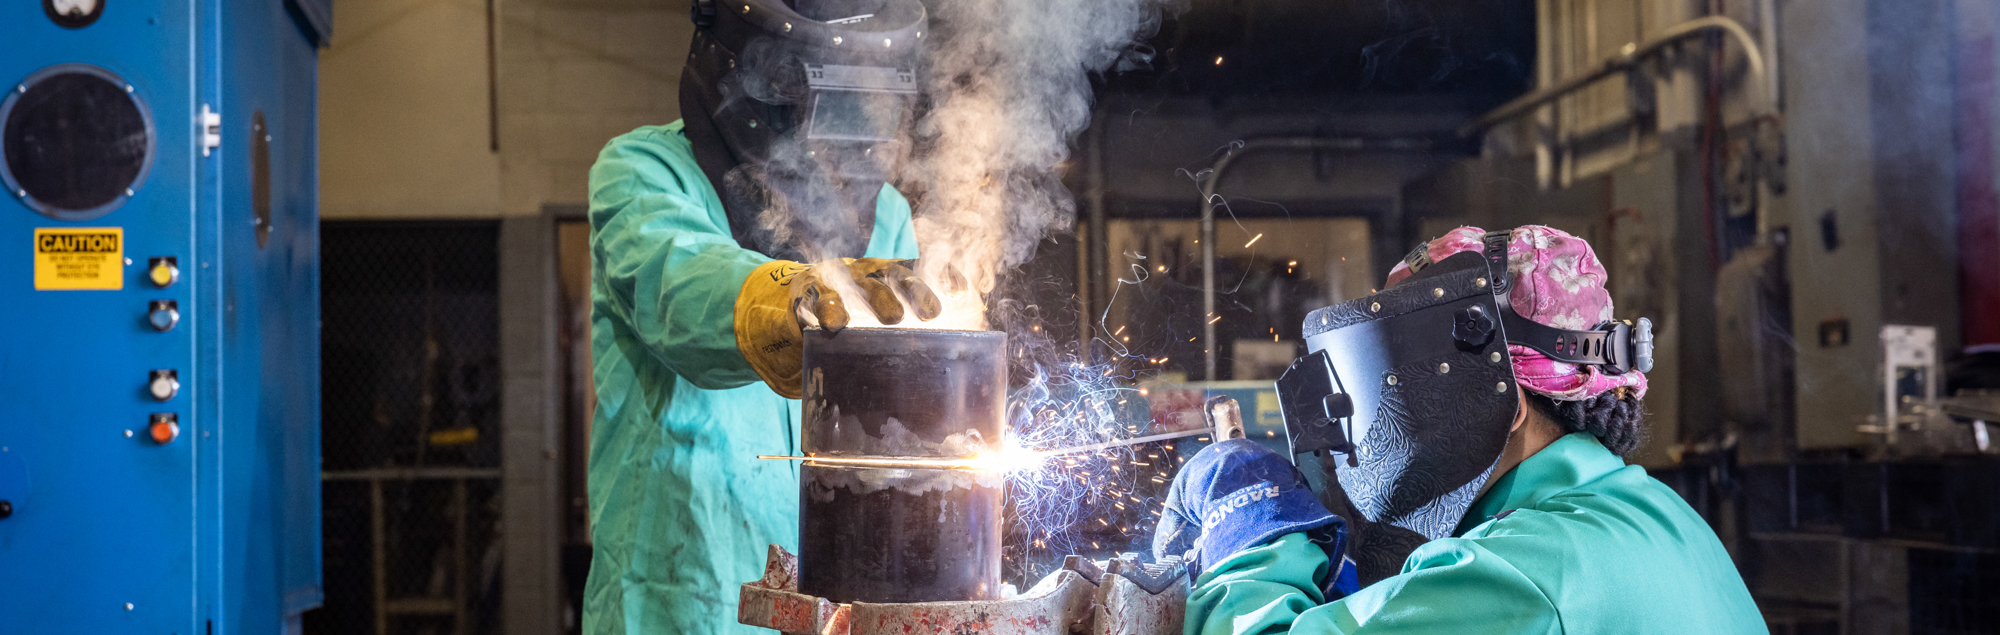 FDTC welding students practice welding in the welding lab